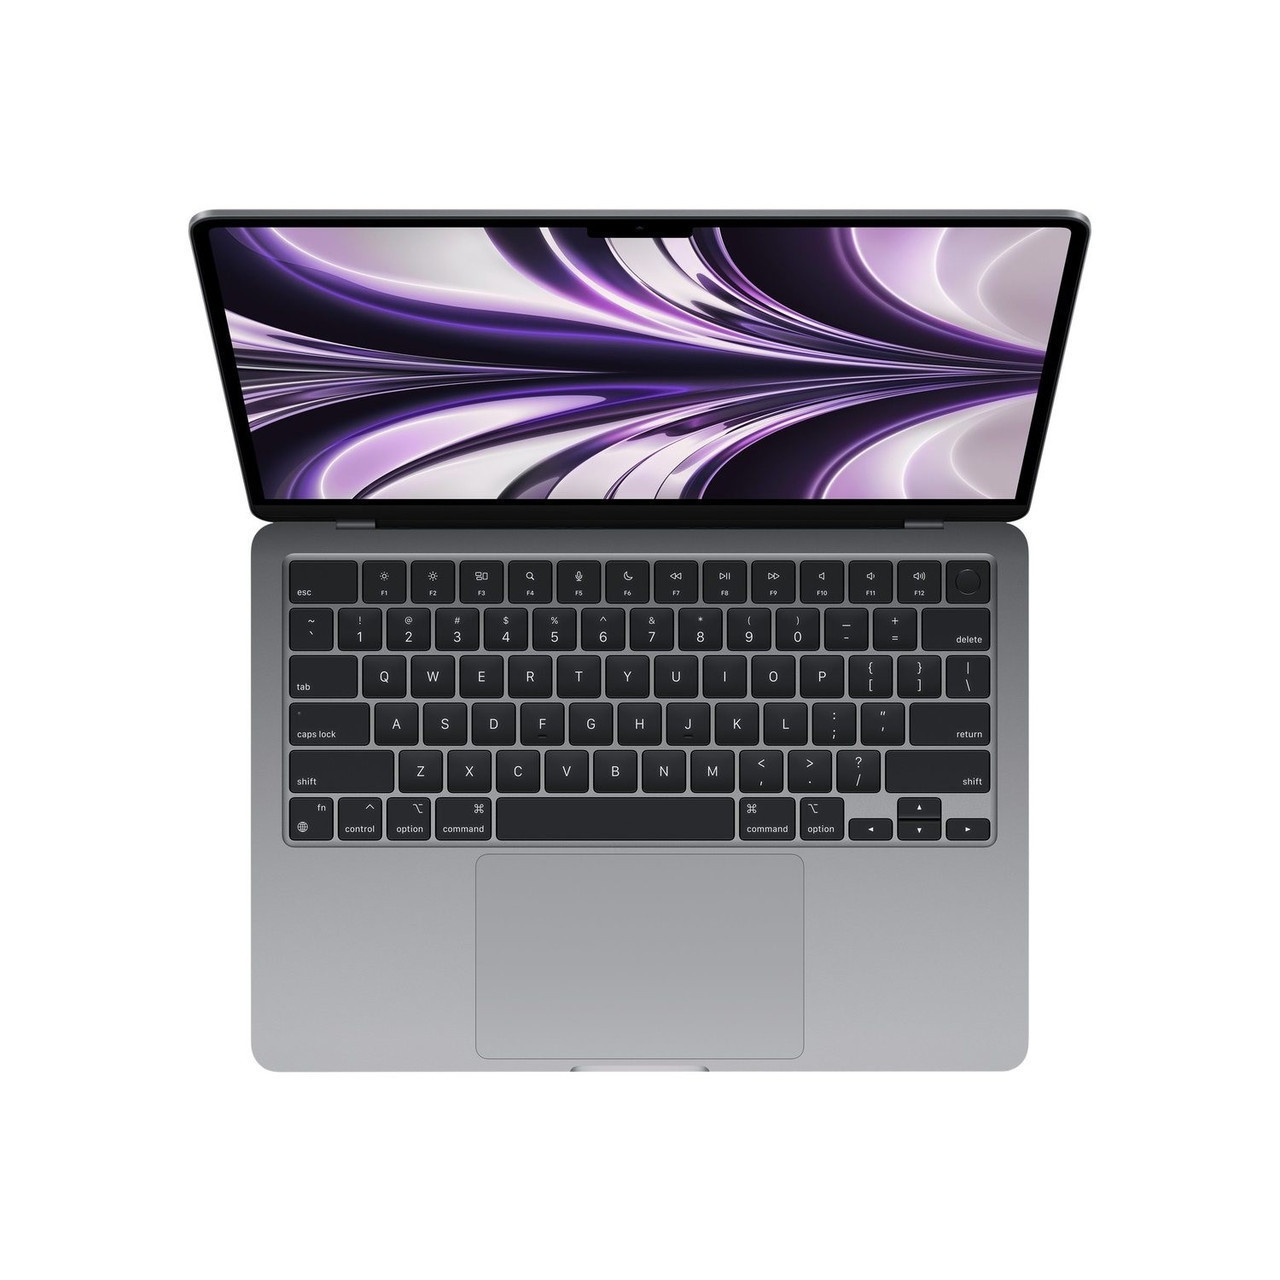 133インチSSD容量未開封 Apple MacBook Air M1 スペースグレイ 512GBAPPLE - navalpost.com